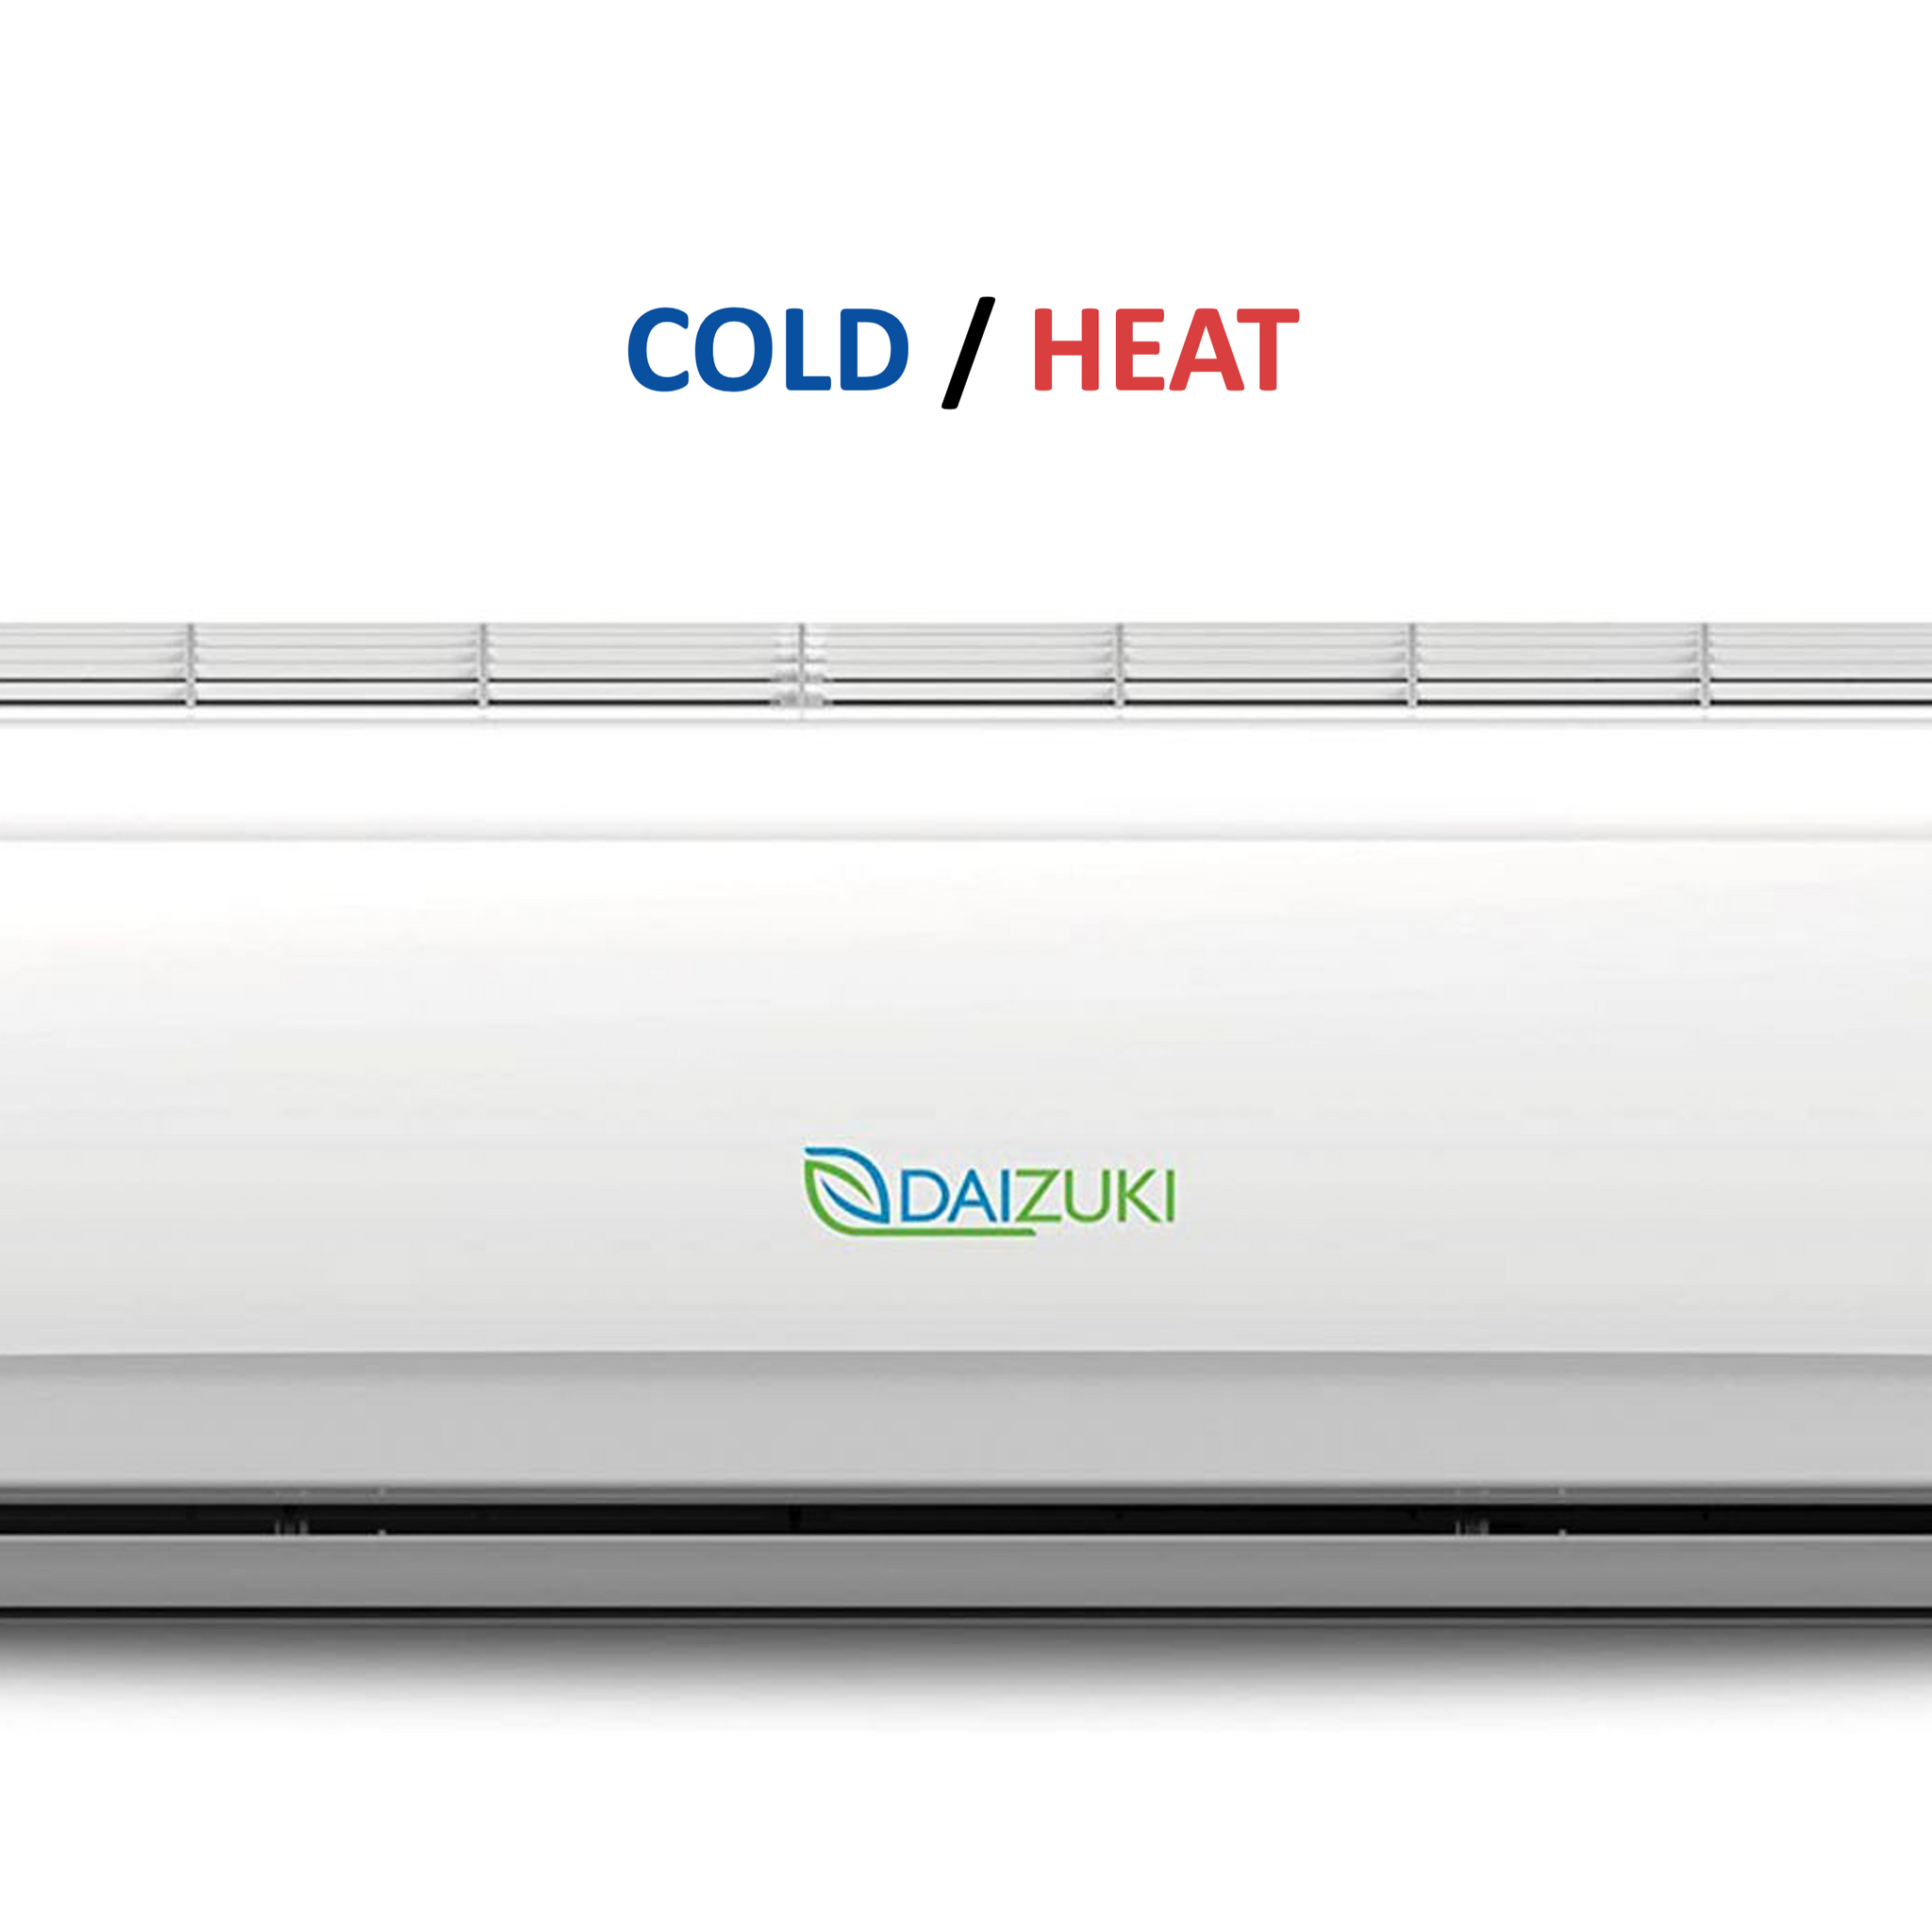 Minisplit Cold/Heat Air conditioner - 12,000BTU / 220V (20 SEER) - DAIZUKI